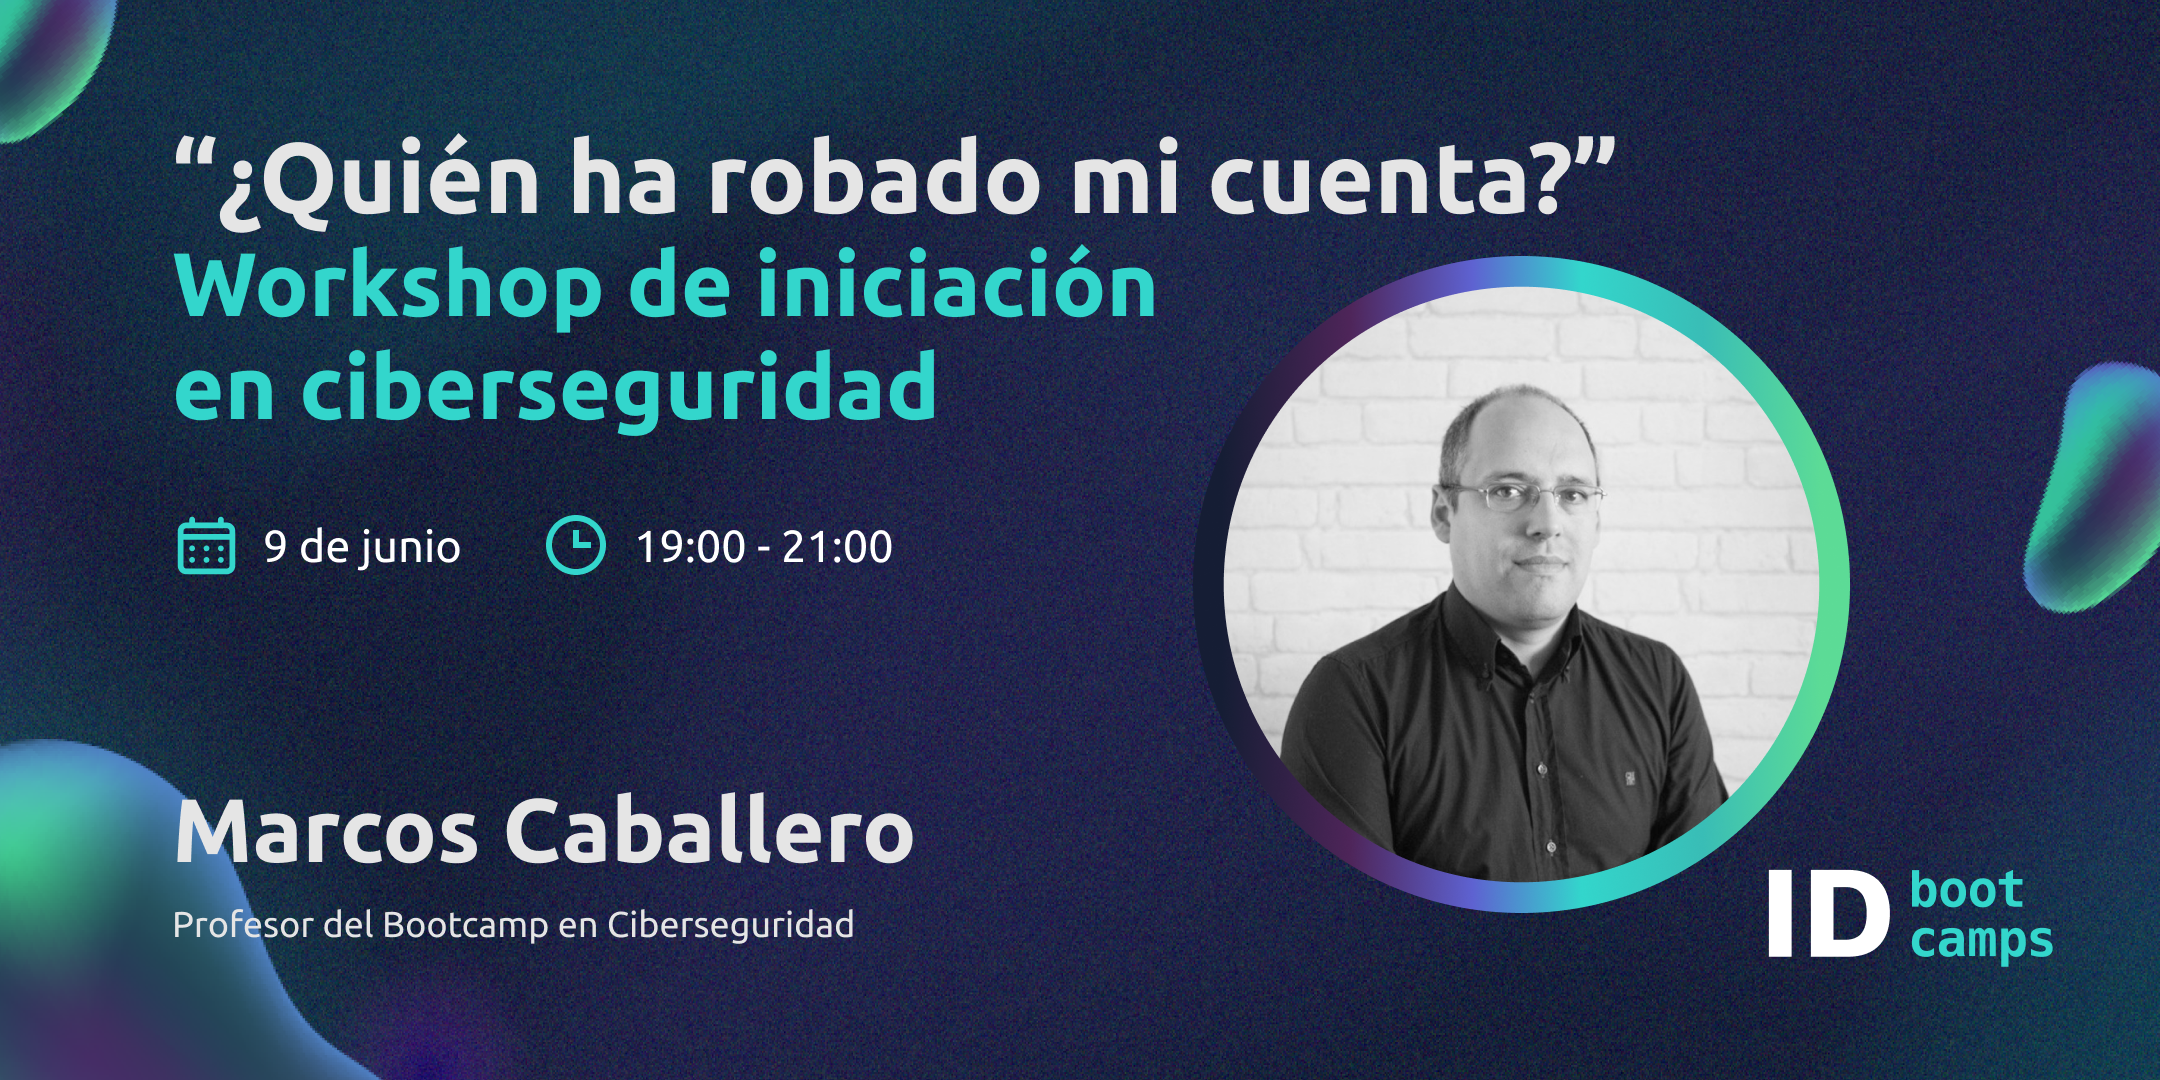 workshop ciberseguridad Marcos Caballero - ID Bootcamps 9 junio